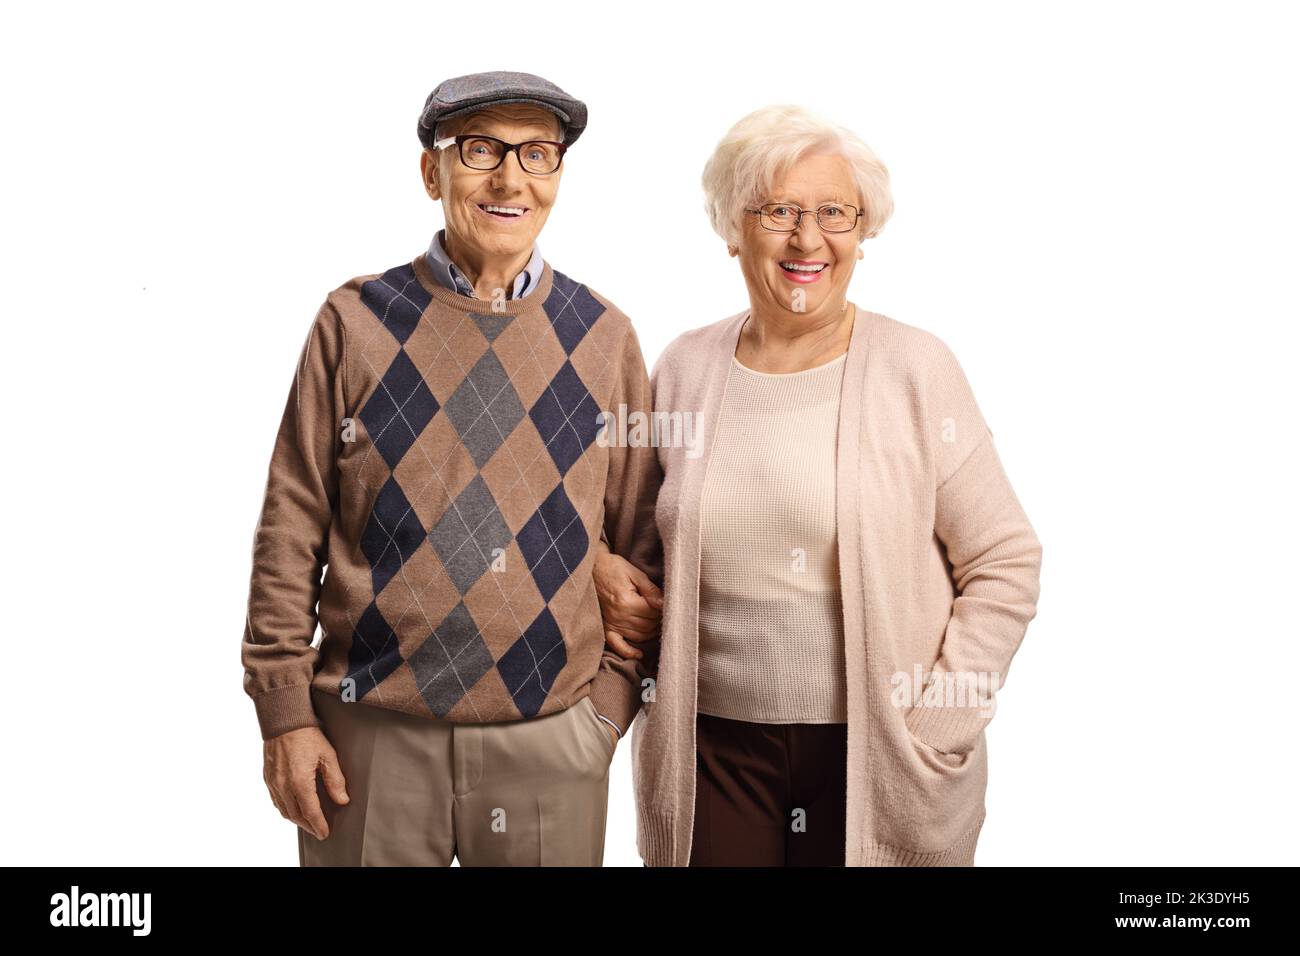 Smiling senior couple posing isolated on white background Stock Photo